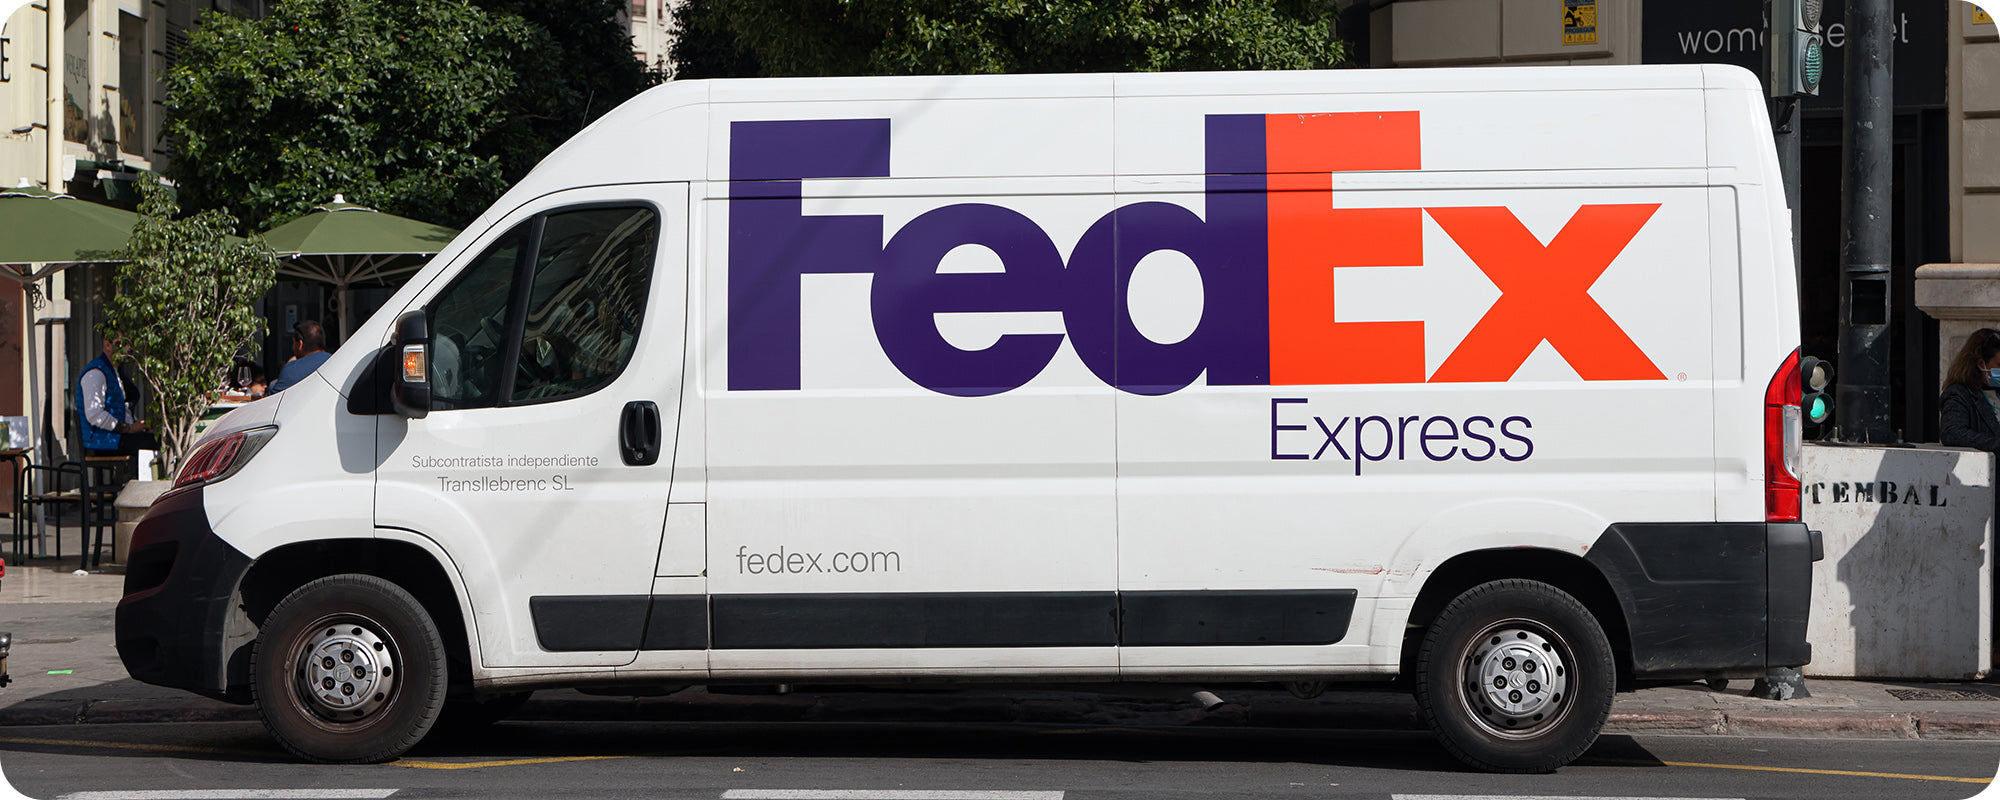 fedex van doing deliveries in the city